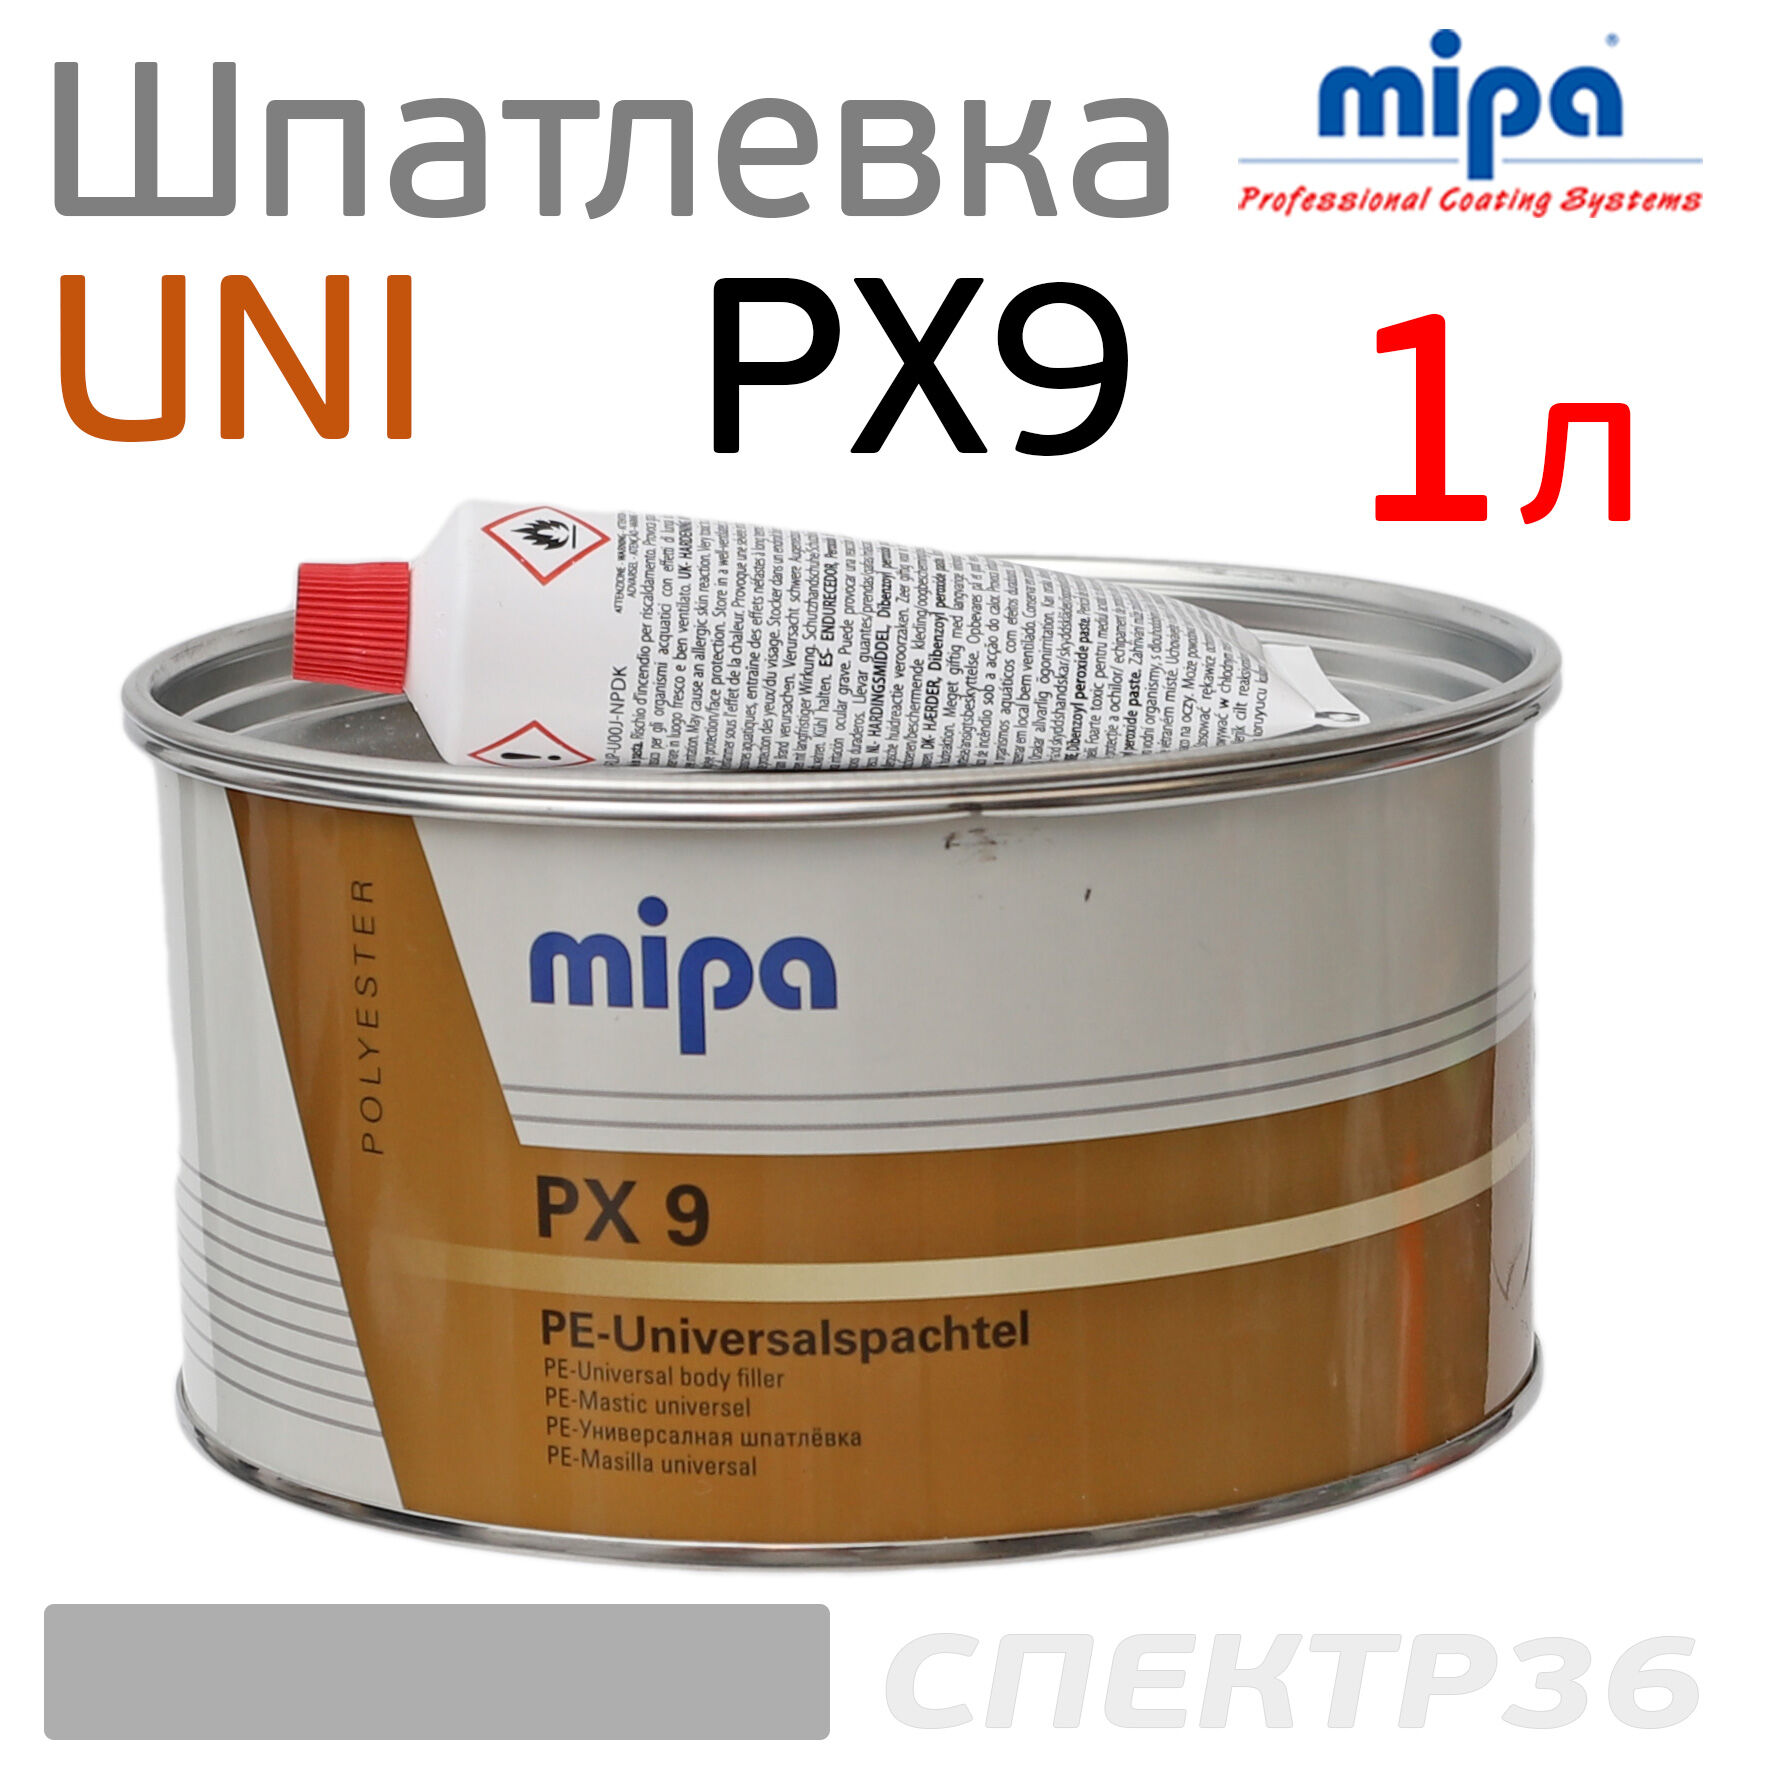 Шпатлевка Mipa PX9 Universal 1л легкая Filling putty универсальня полиэфирная авторемонтная